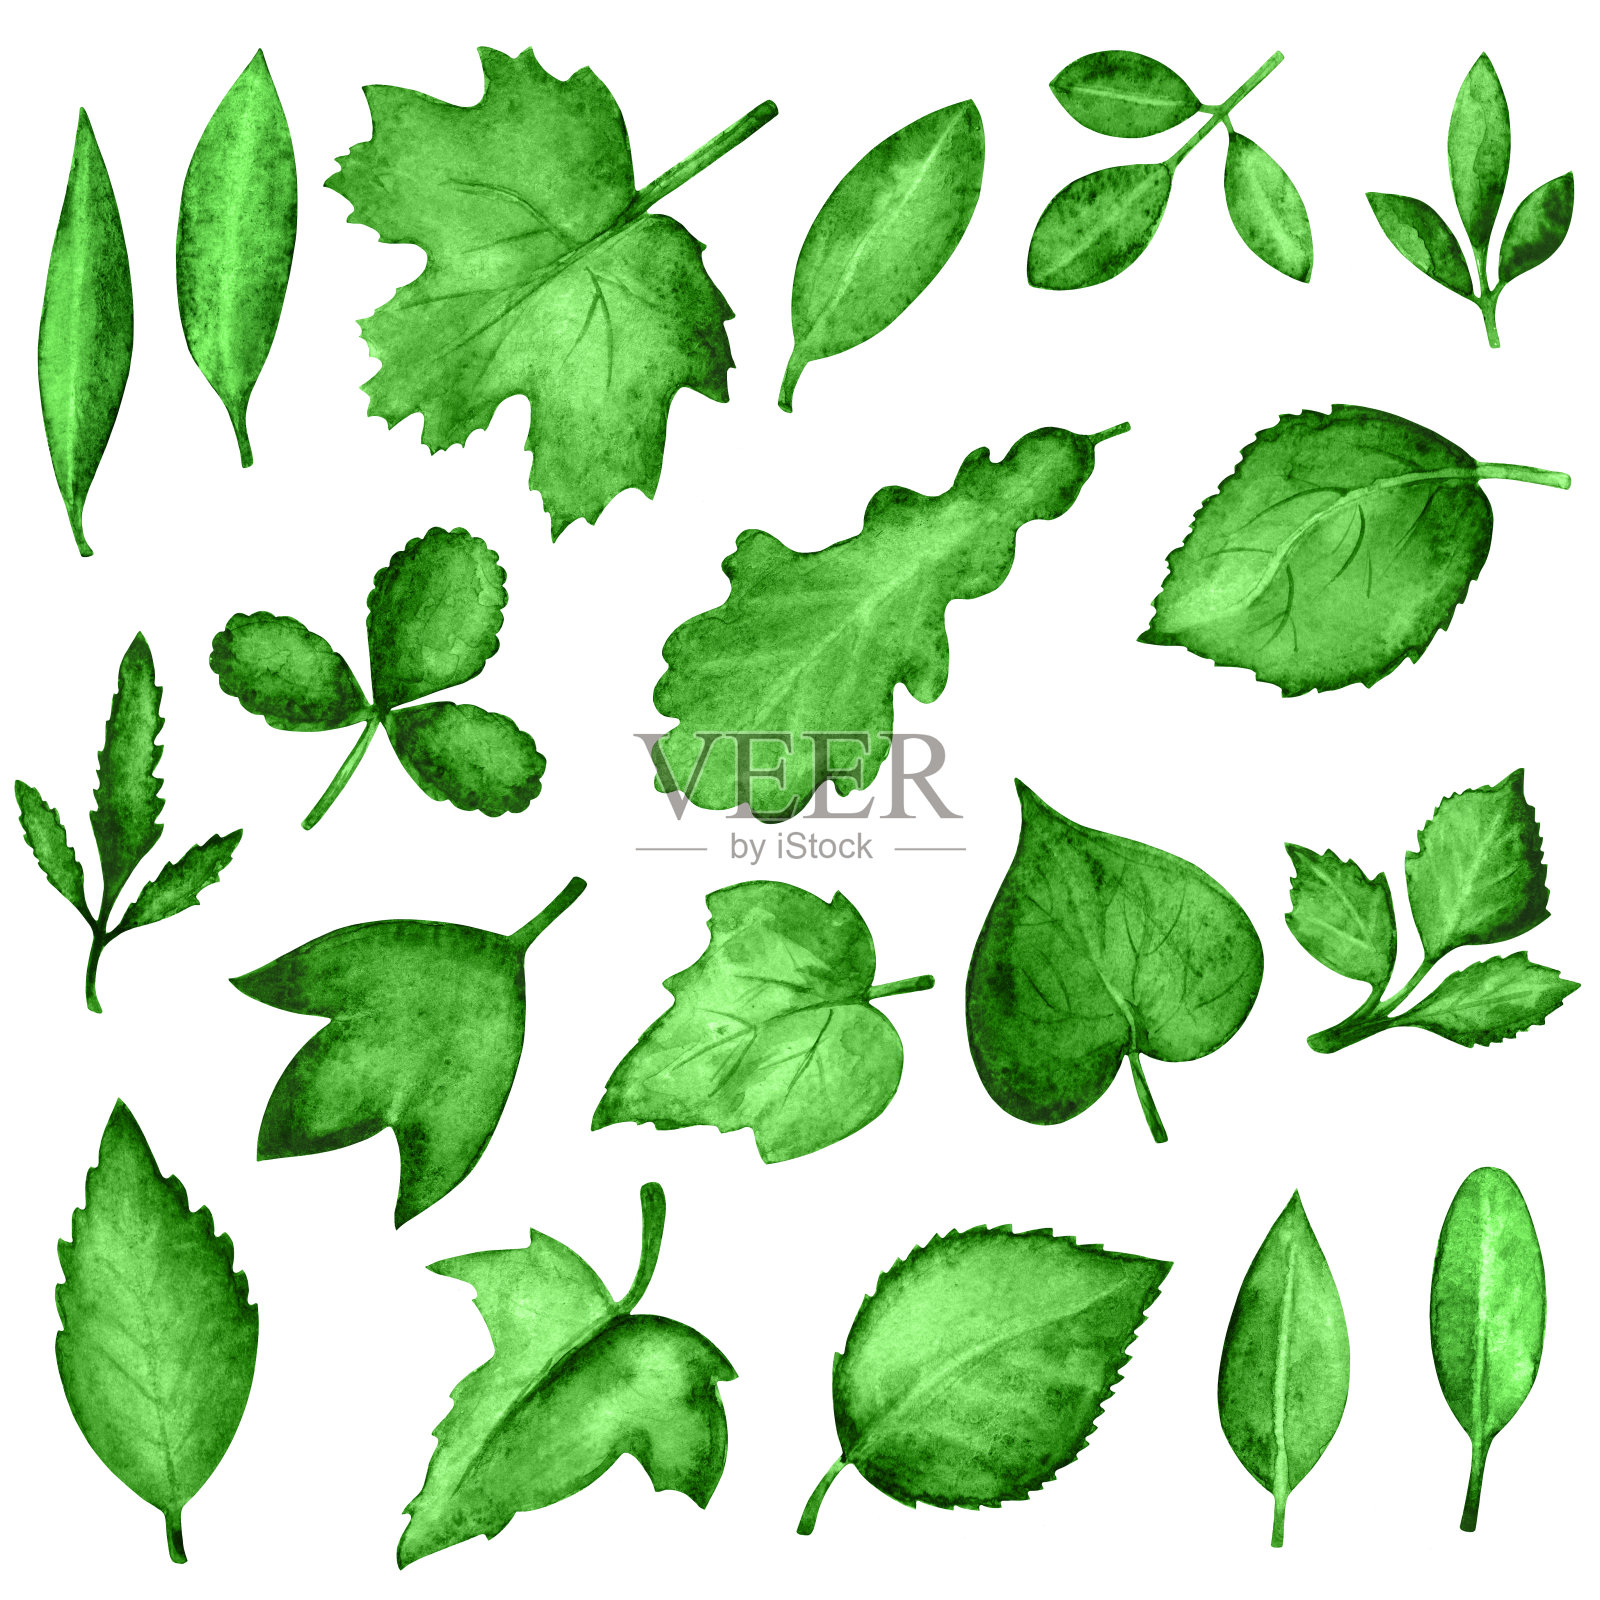 水彩绿叶插画图片素材